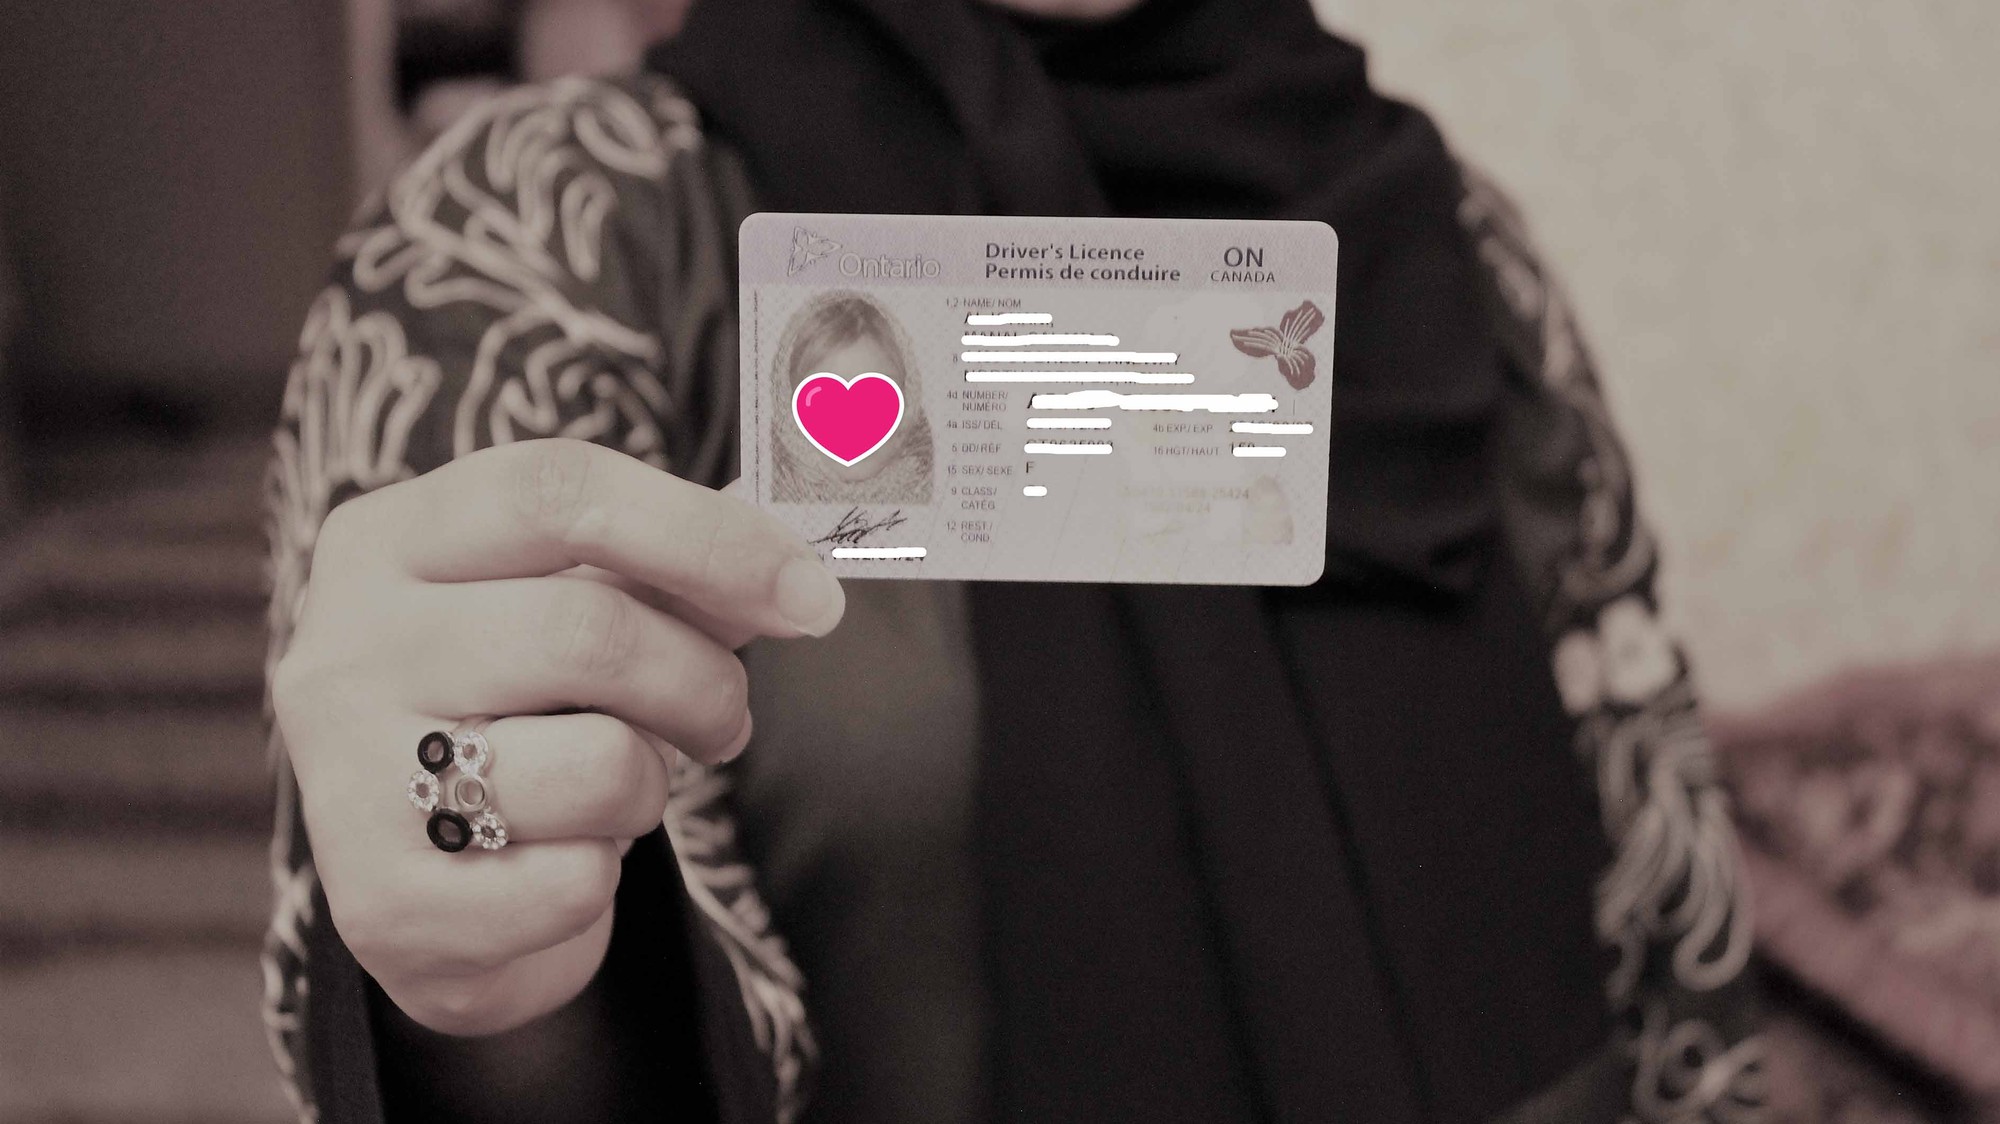 6 نساء سعوديات يحملن رخص قيادة دولية يتحدثن عن تجربة القيادة